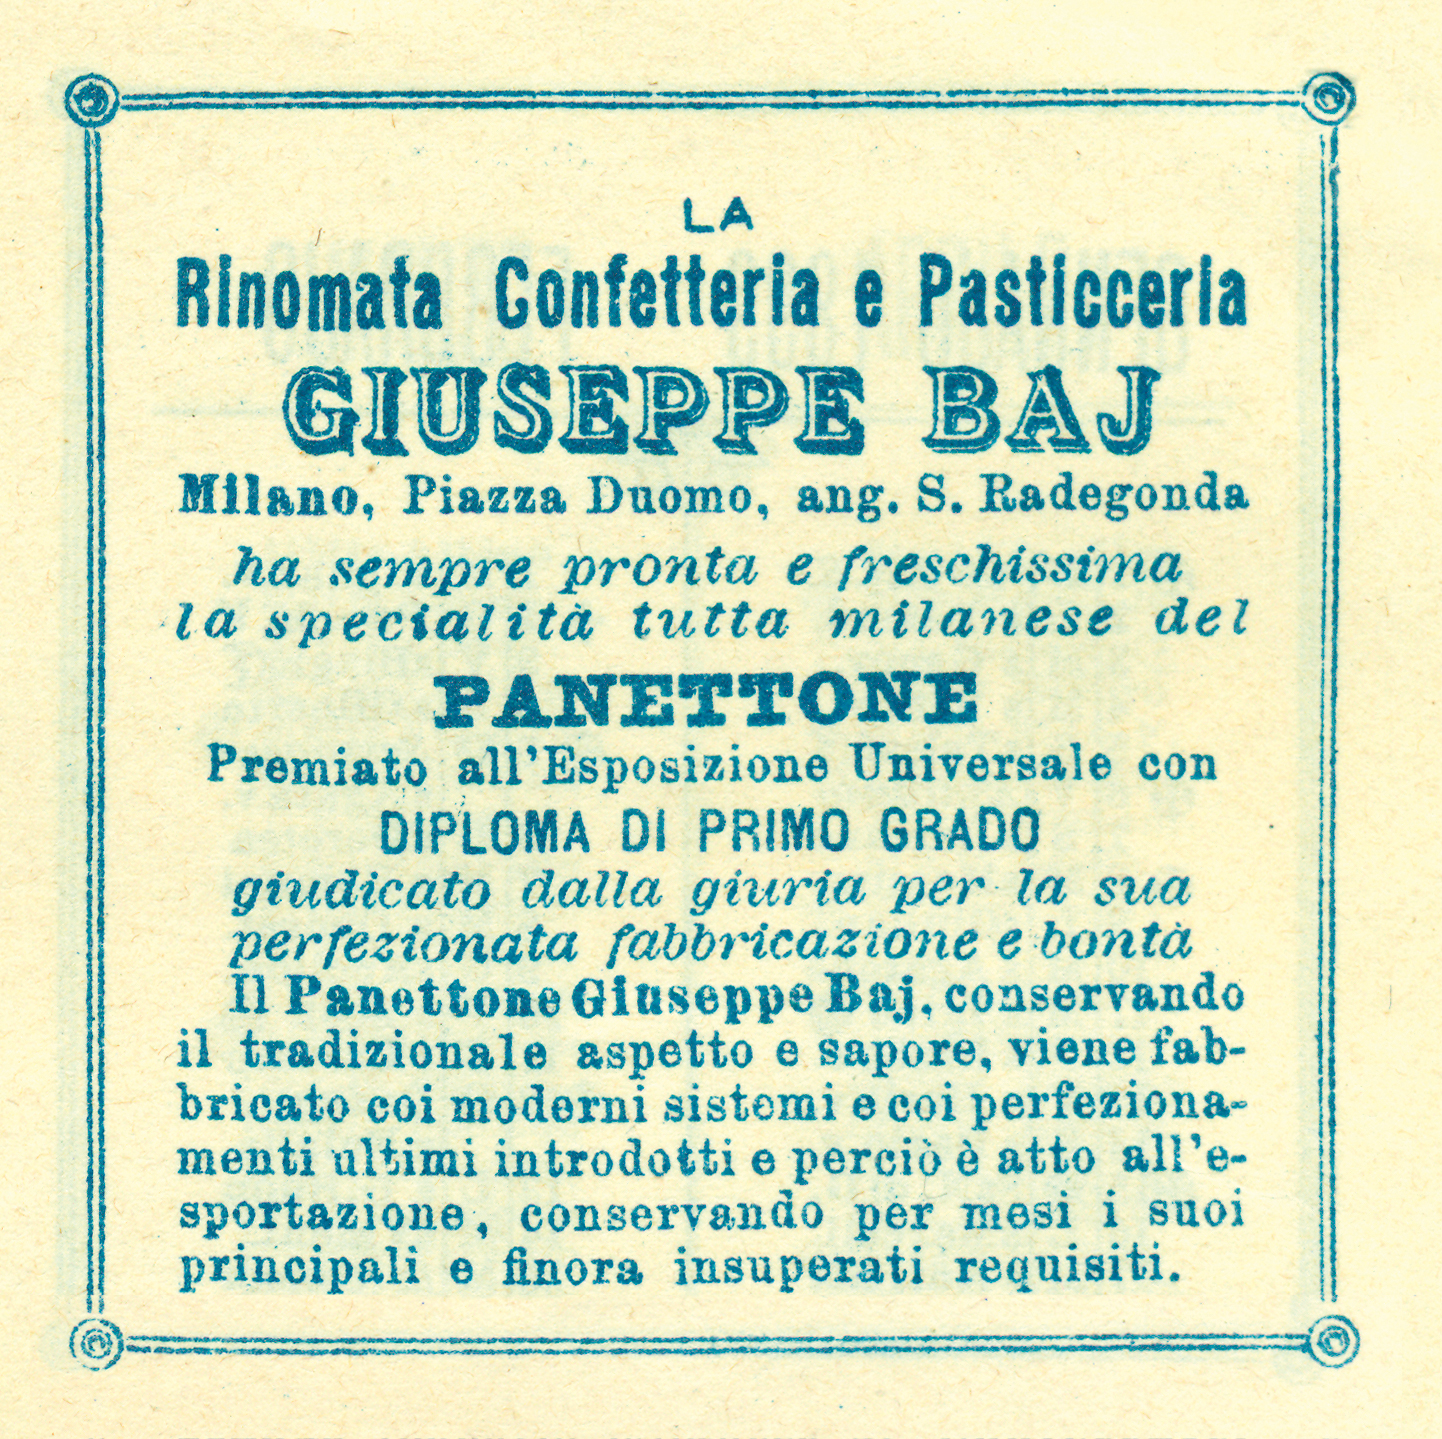 Cartellino sulla qualità della Rinomata Confetteria e Pasticceria Giuseppe Baj